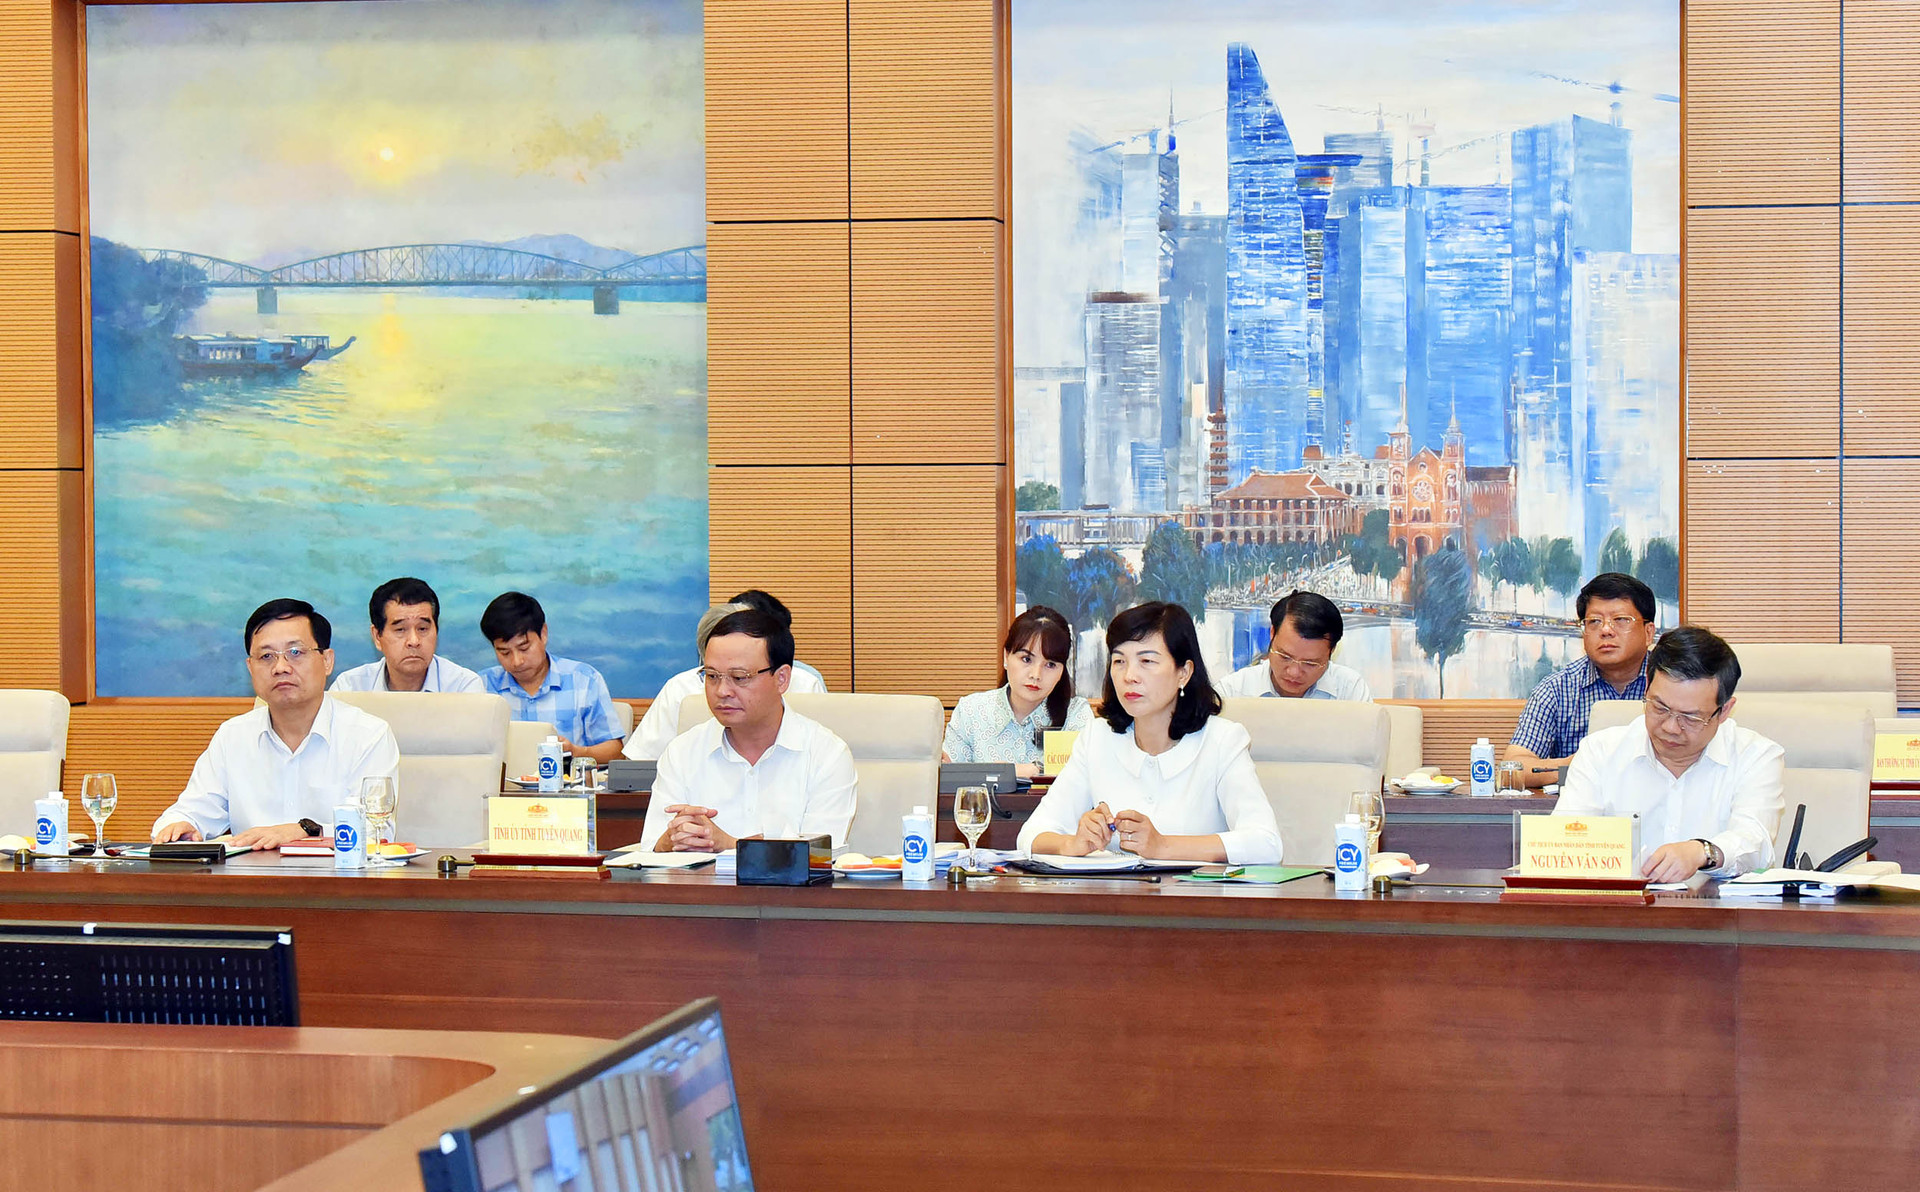 Chủ tịch Quốc hội Vương Đình Huệ: Xây dựng Sơn Dương thành huyện nông thôn mới là nhiệm vụ có ý nghĩa chính trị to lớn